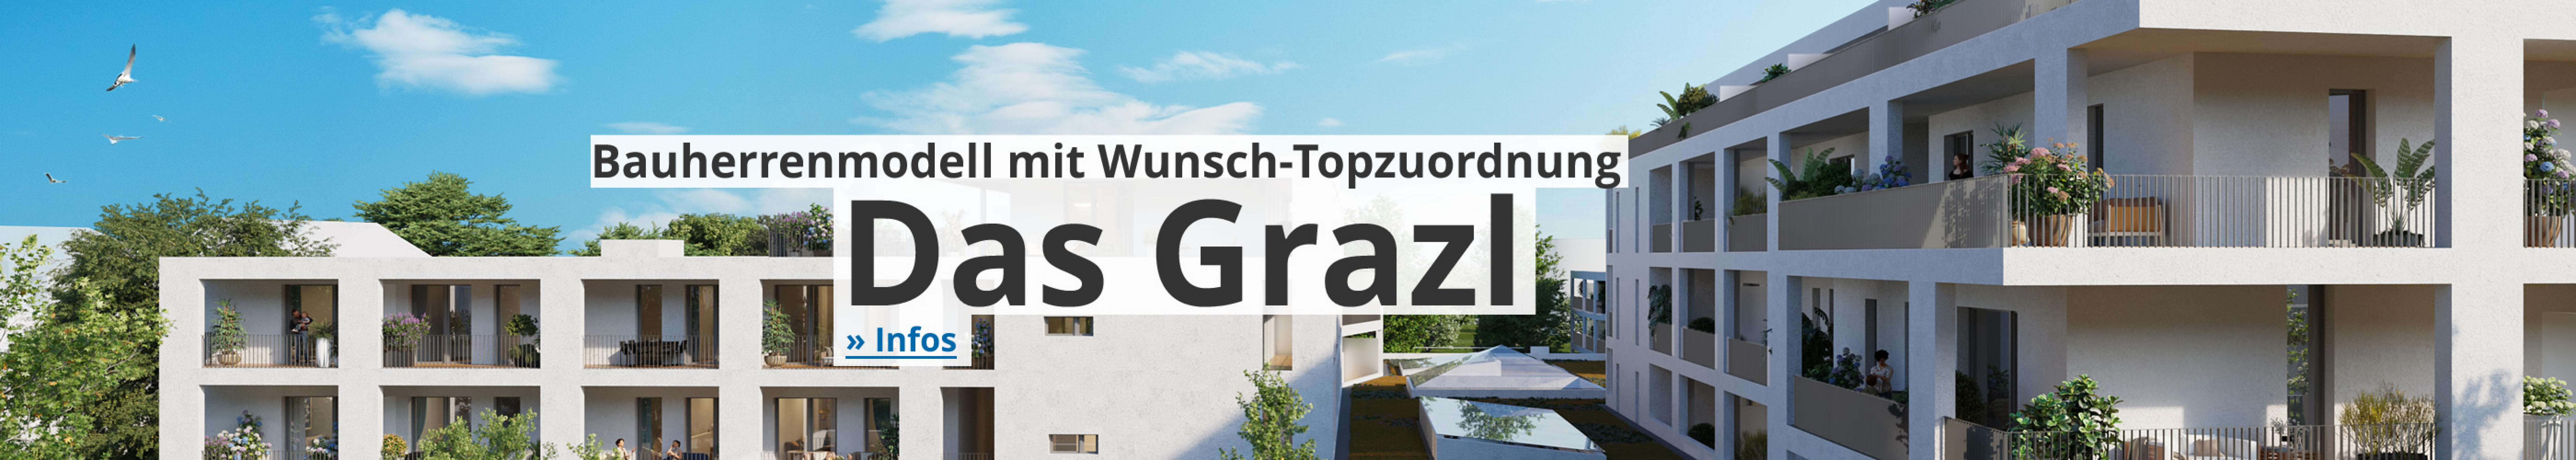 Das Grazl - Bauherrenmodell mit Topzuordnung